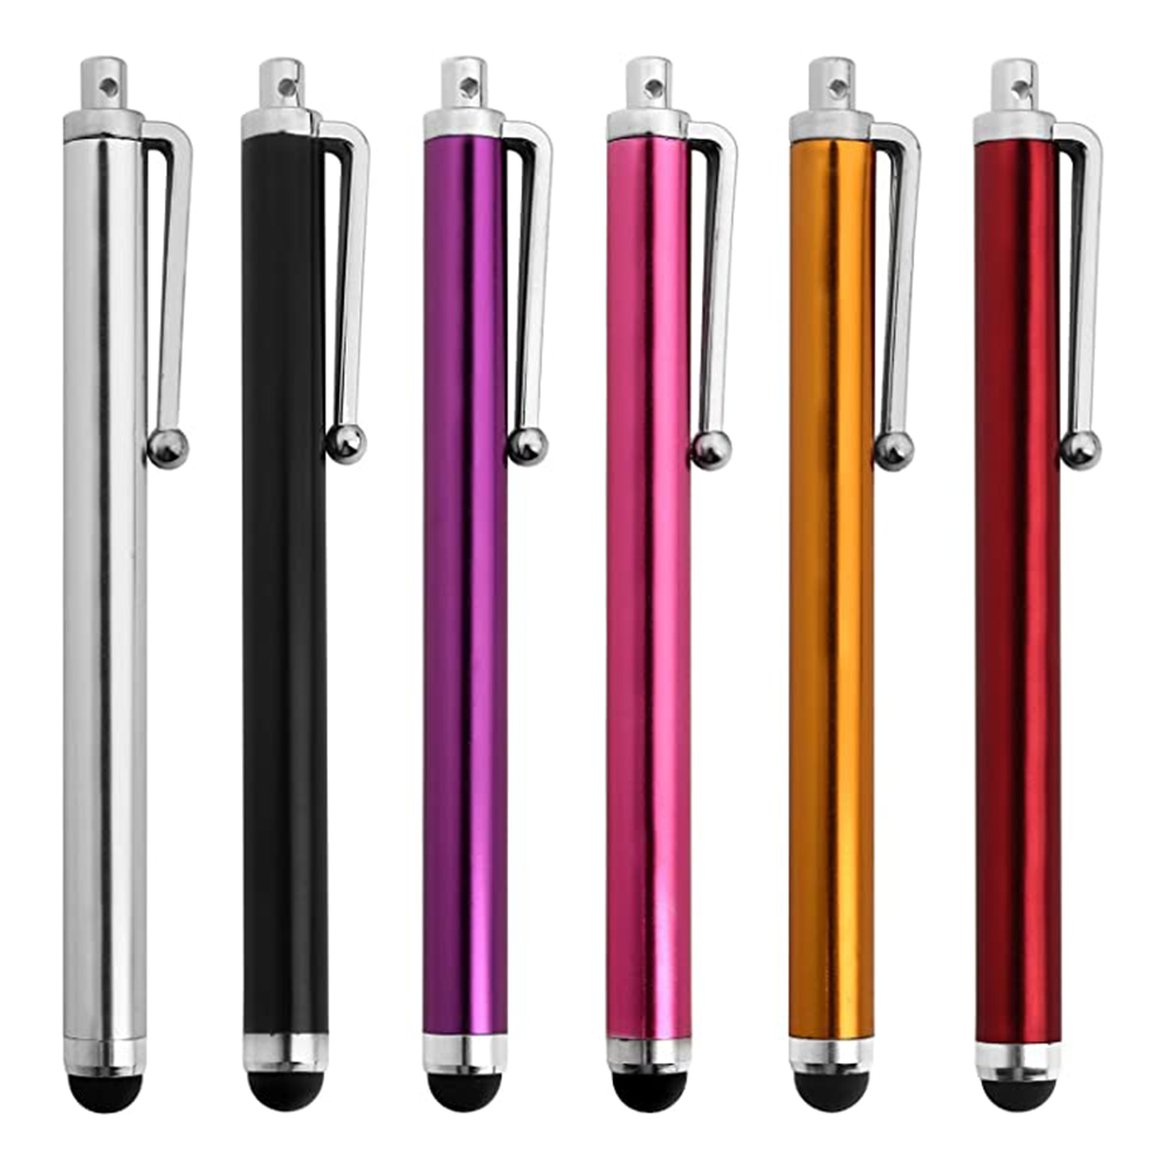 รูปภาพเพิ่มเติมเกี่ยวกับ Metal Capacitive Touch Screen Stylus Pen for Phone Ipad Tablet Pens Metal Universal Capacitive Touch Screen Stylus Pen Pens ALL touch screen devices EPEN